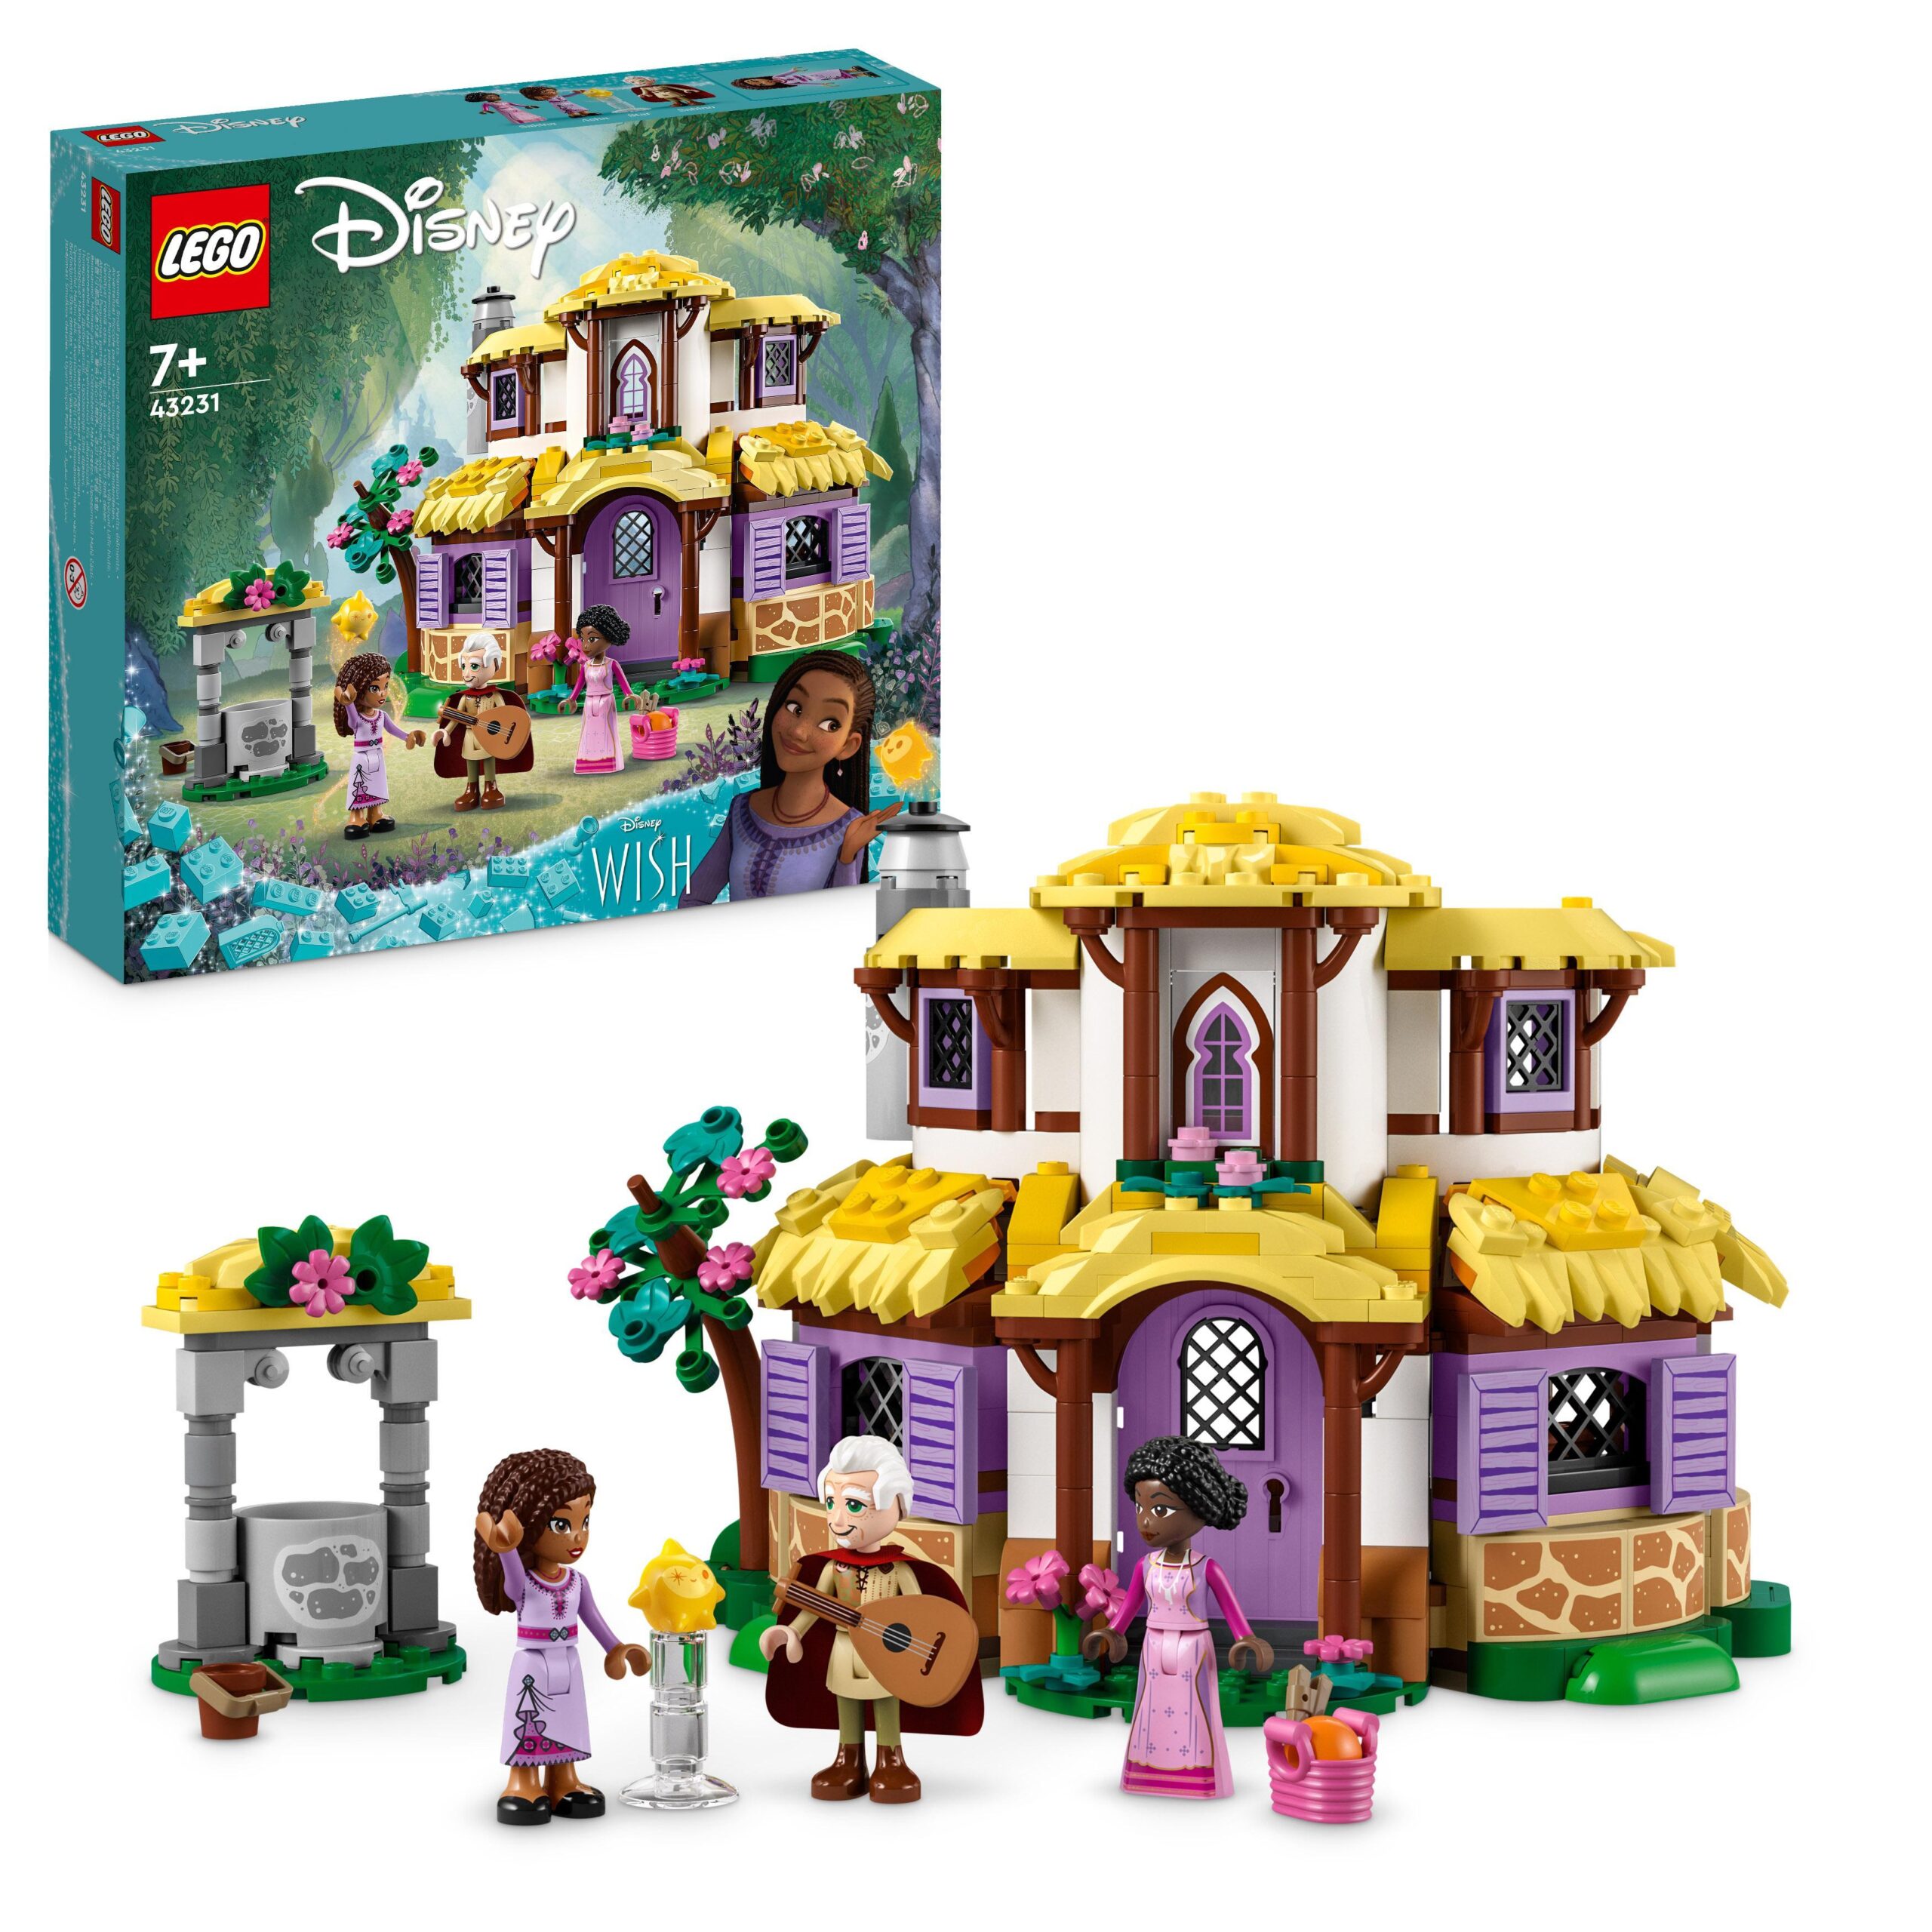 Lego principessa disney 43204 divertimento al castello di anna e olaf, con personaggi  frozen, giochi per bambini dai 4 anni - Toys Center